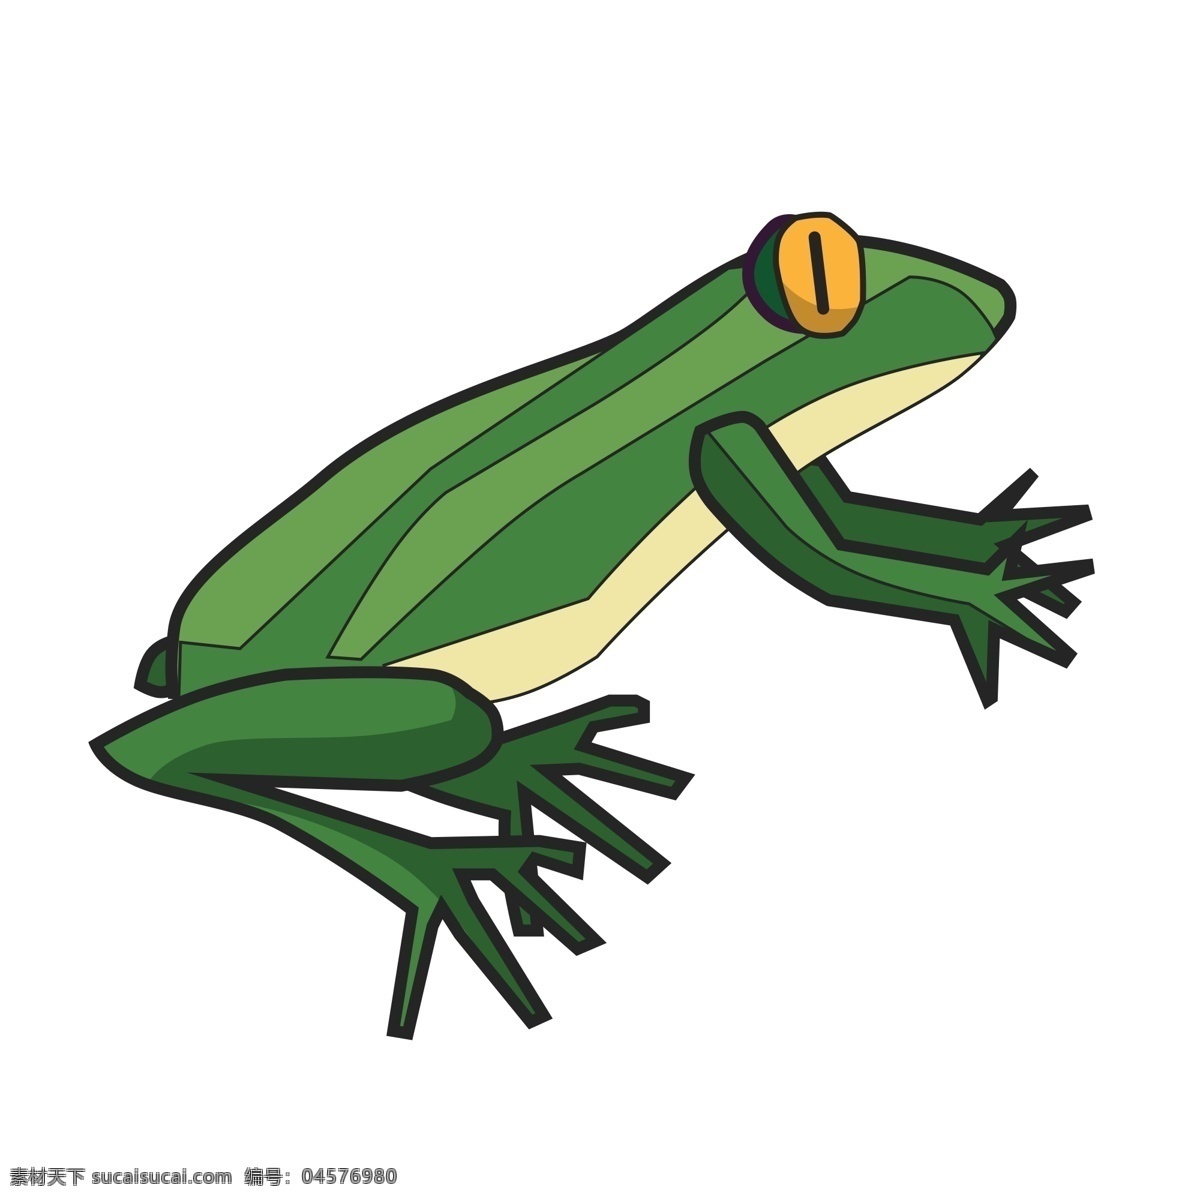 只 准备 起跳 青蛙 商用 元素 绿色 动物 绘画 黄色眼睛 爪子